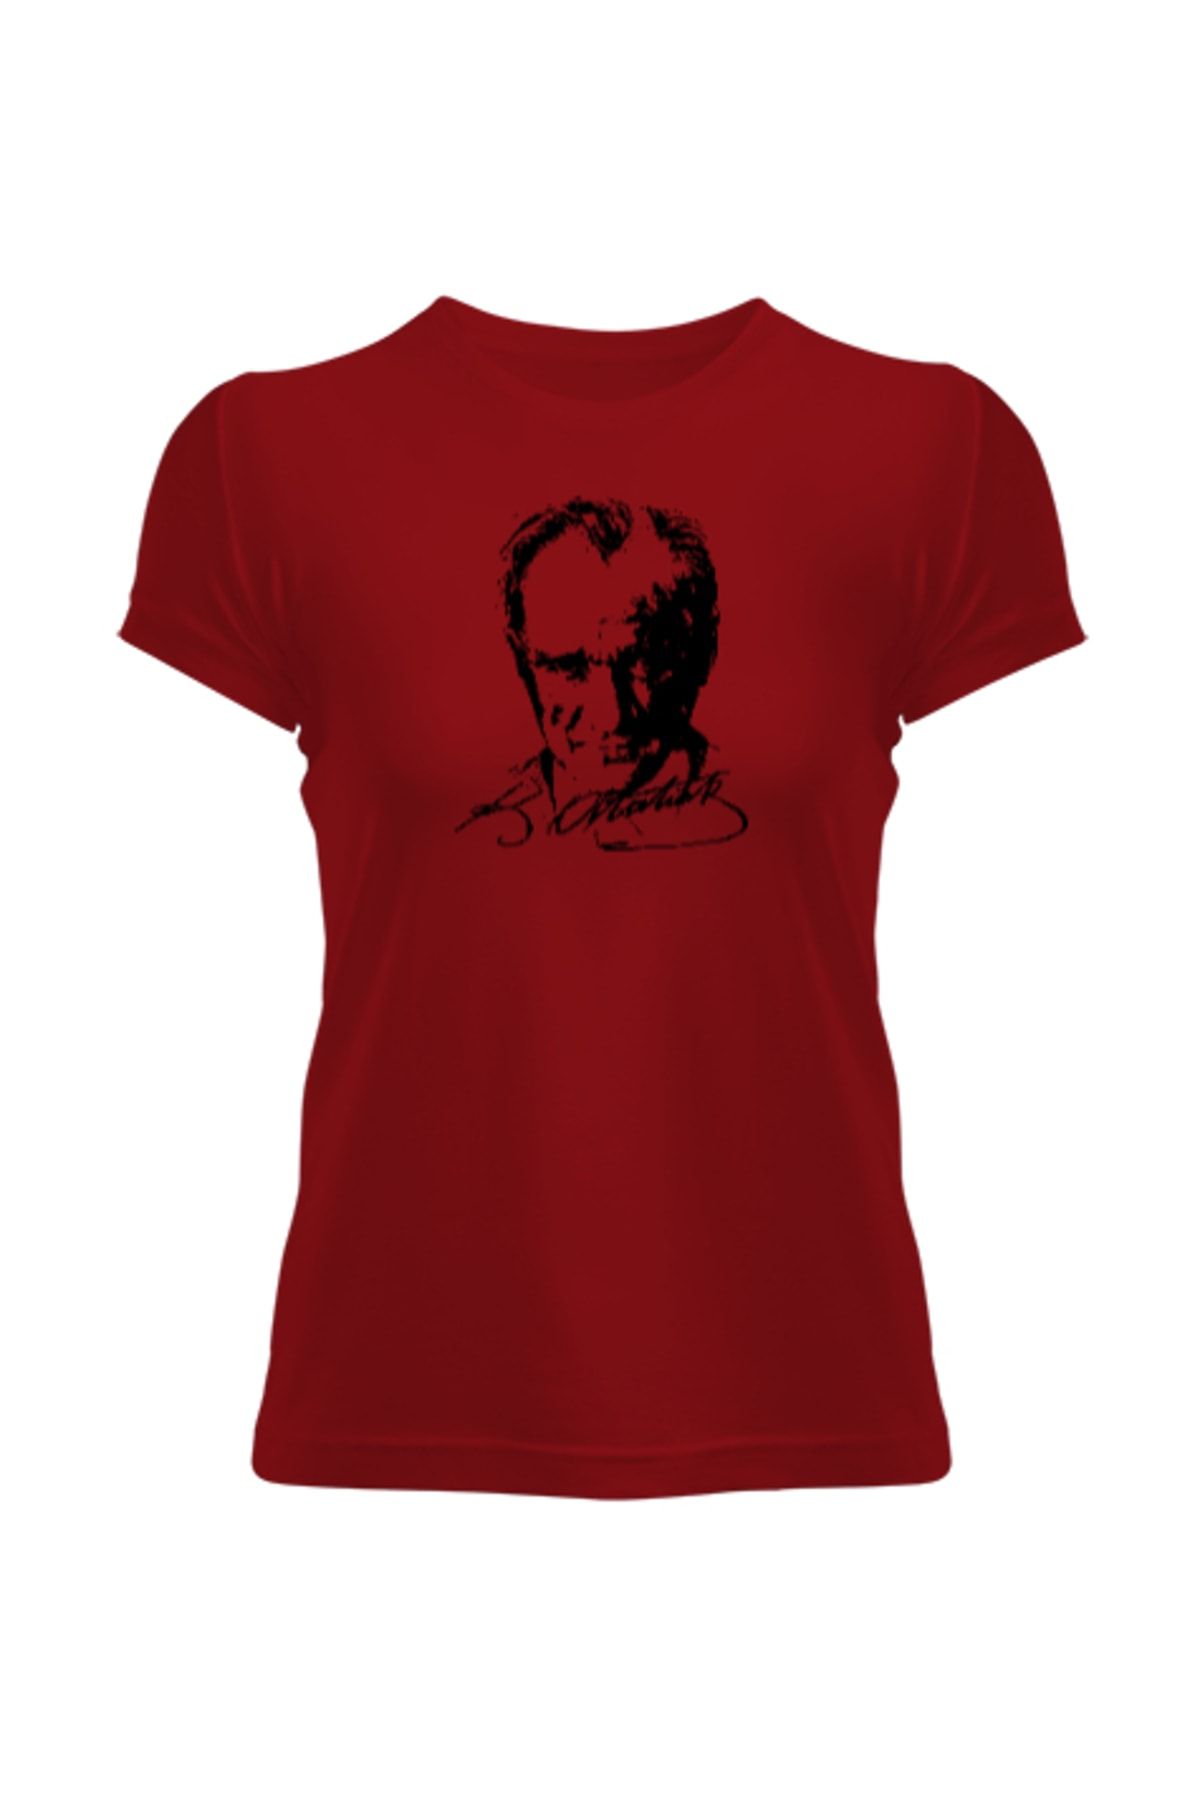 Tisho Mustafa Kemal Atatürk Kırmızı Kadın Tişört